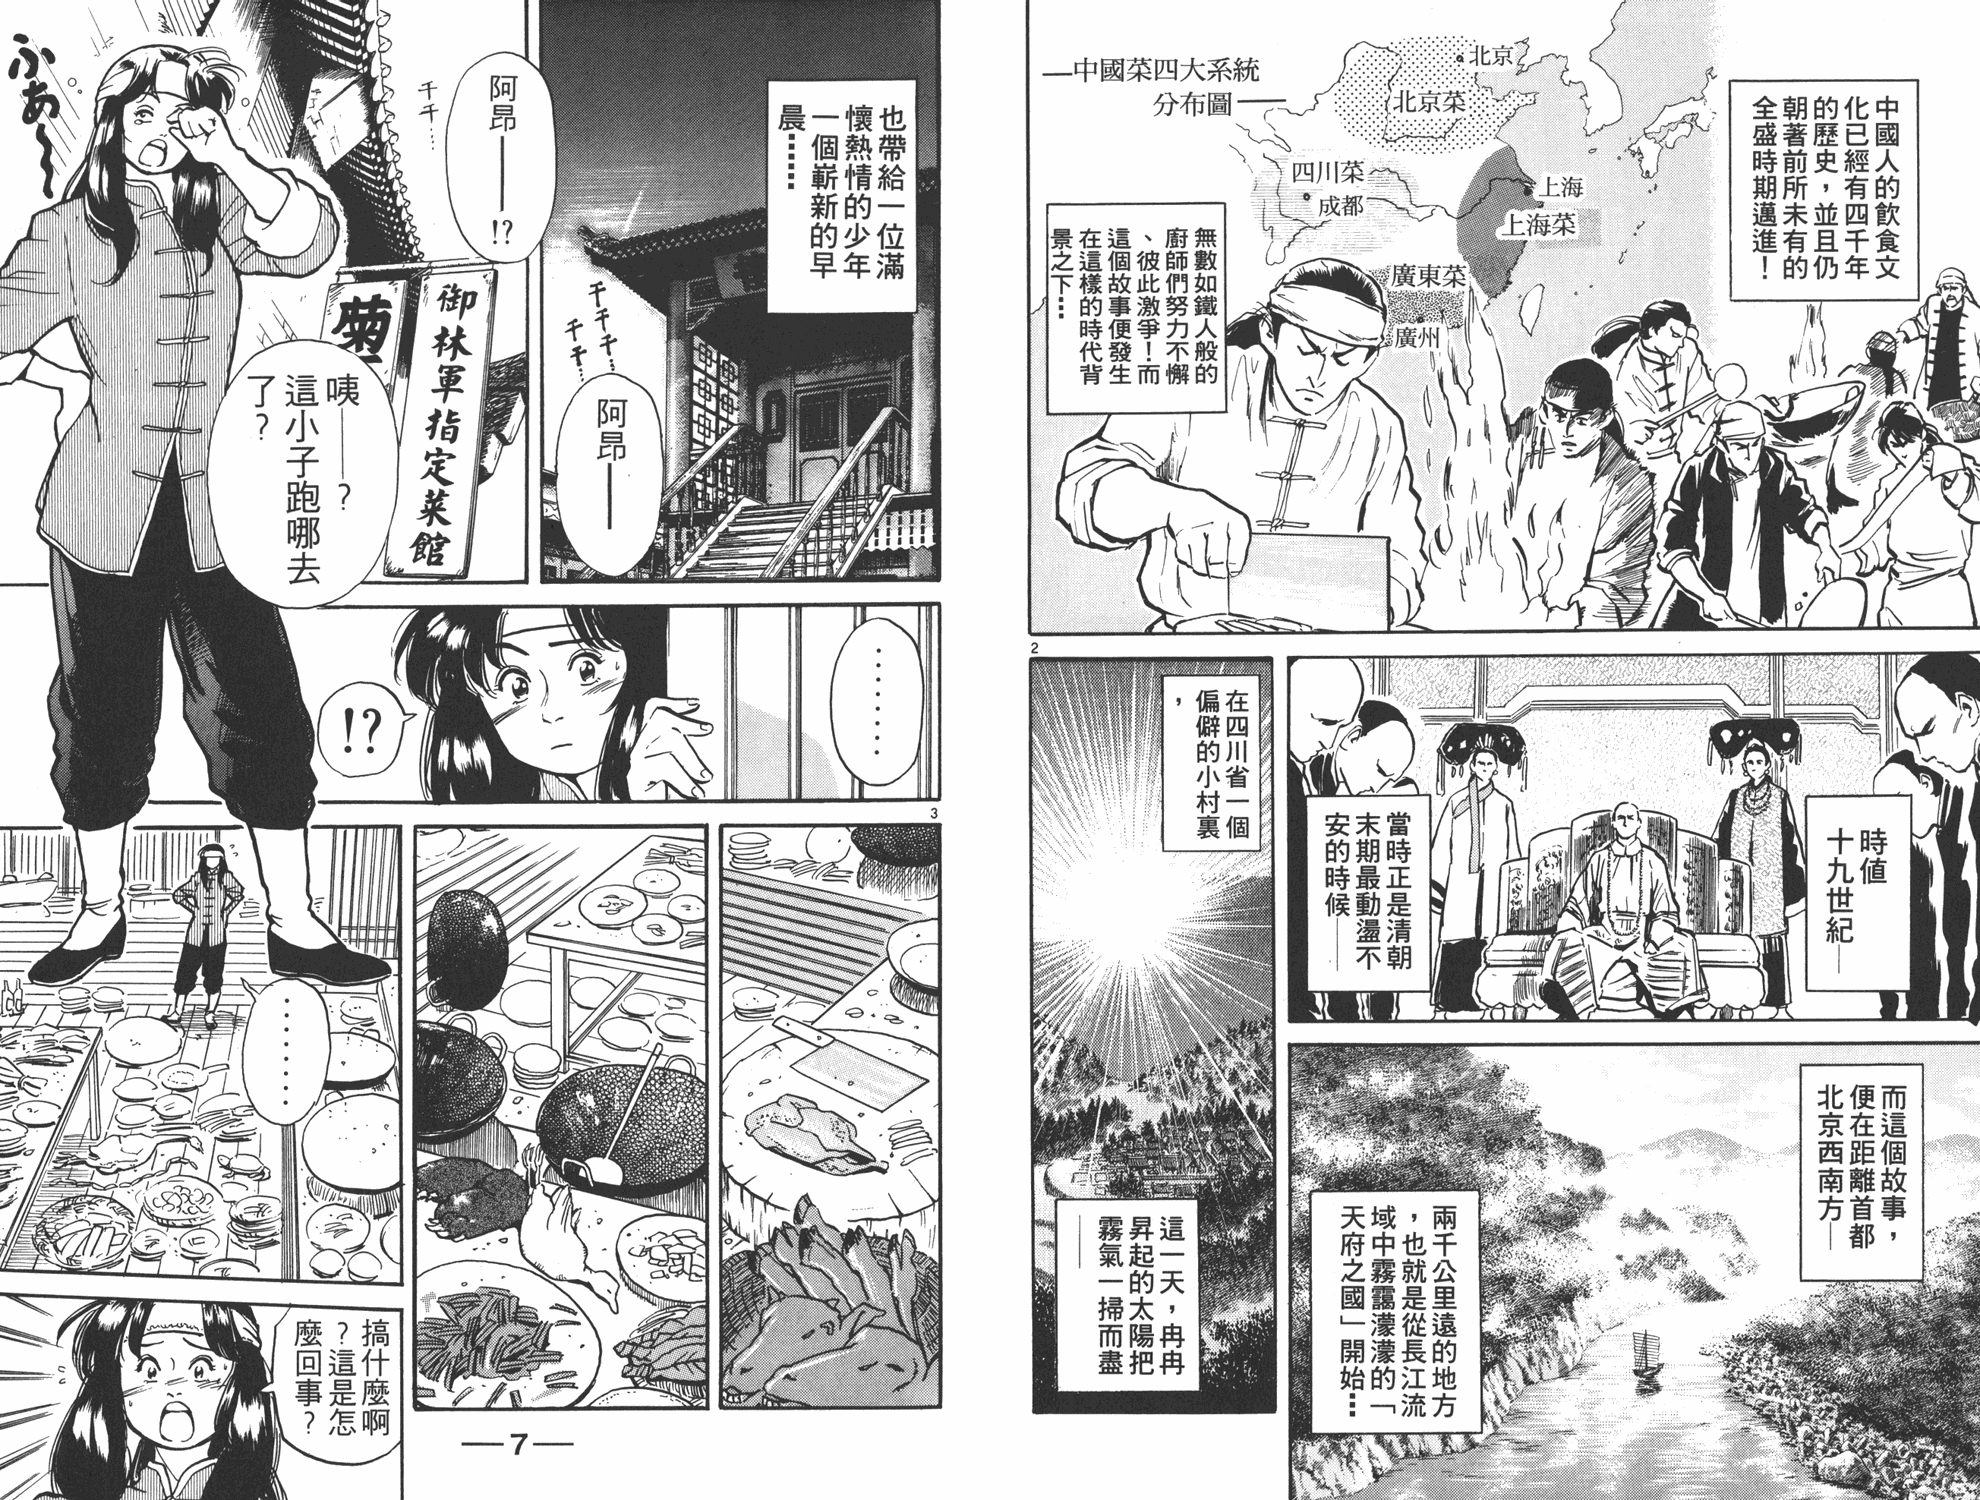 中华小当家第二季国语版全集在线免费观看漫画,第1卷4图